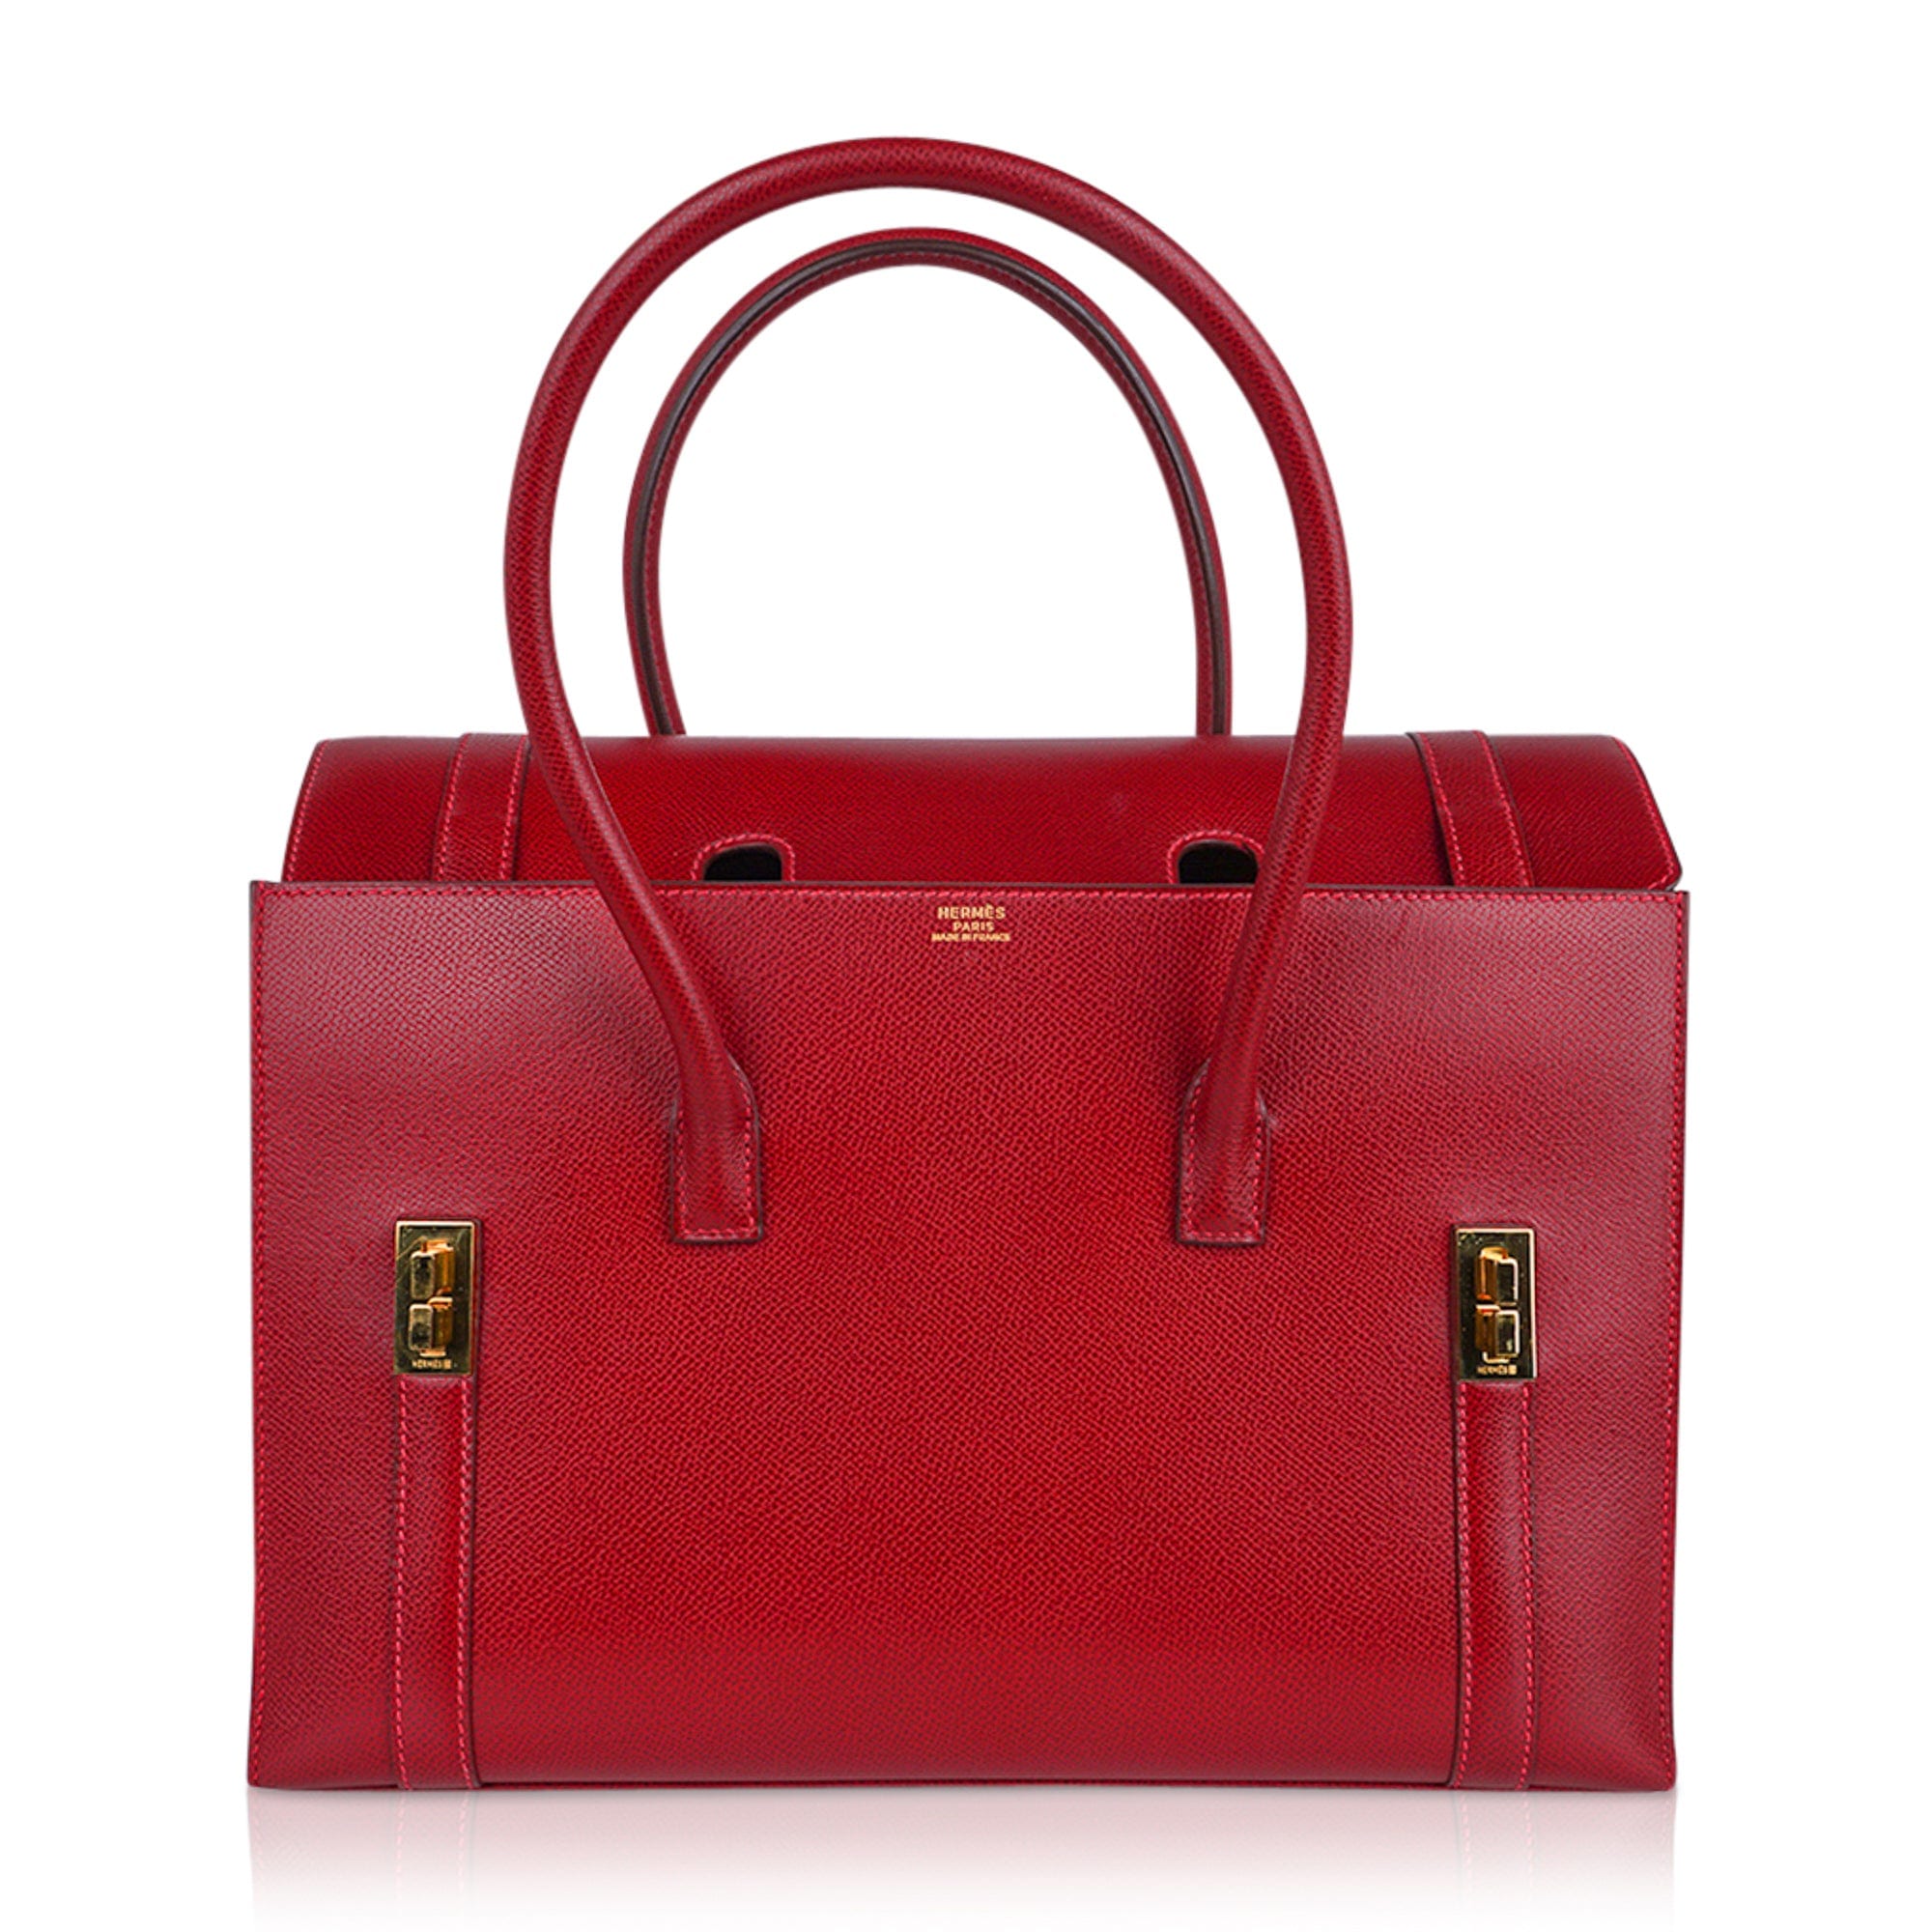 IMG_3264 (1)  Bags, Hermes handbags, Hermes bags